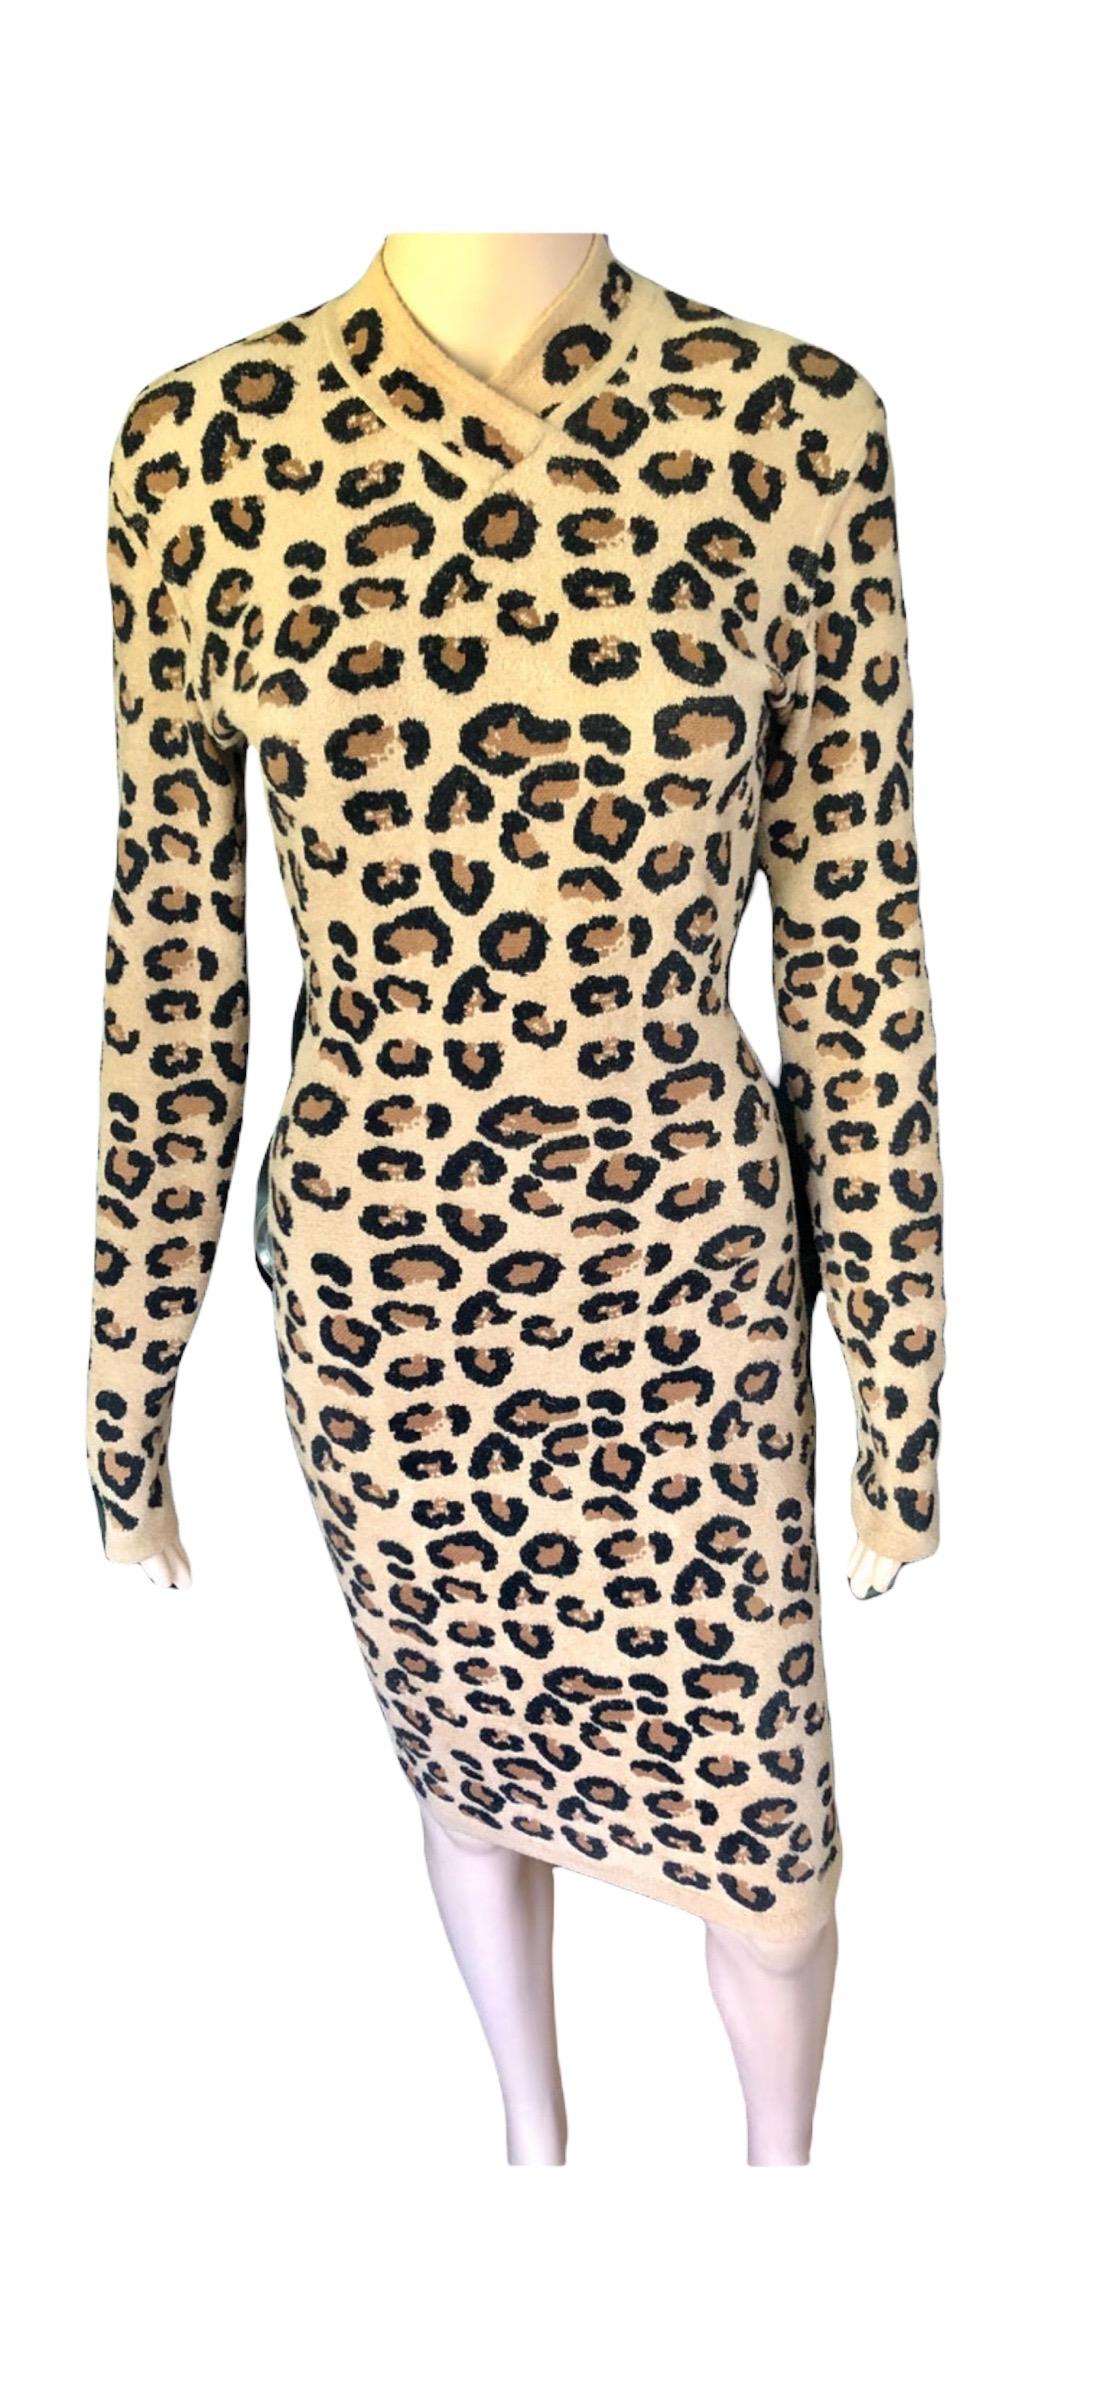 Azzedine Alaia F/W 1991 Runway Vintage Iconic Leopard Print Bodycon Dress For Sale 2